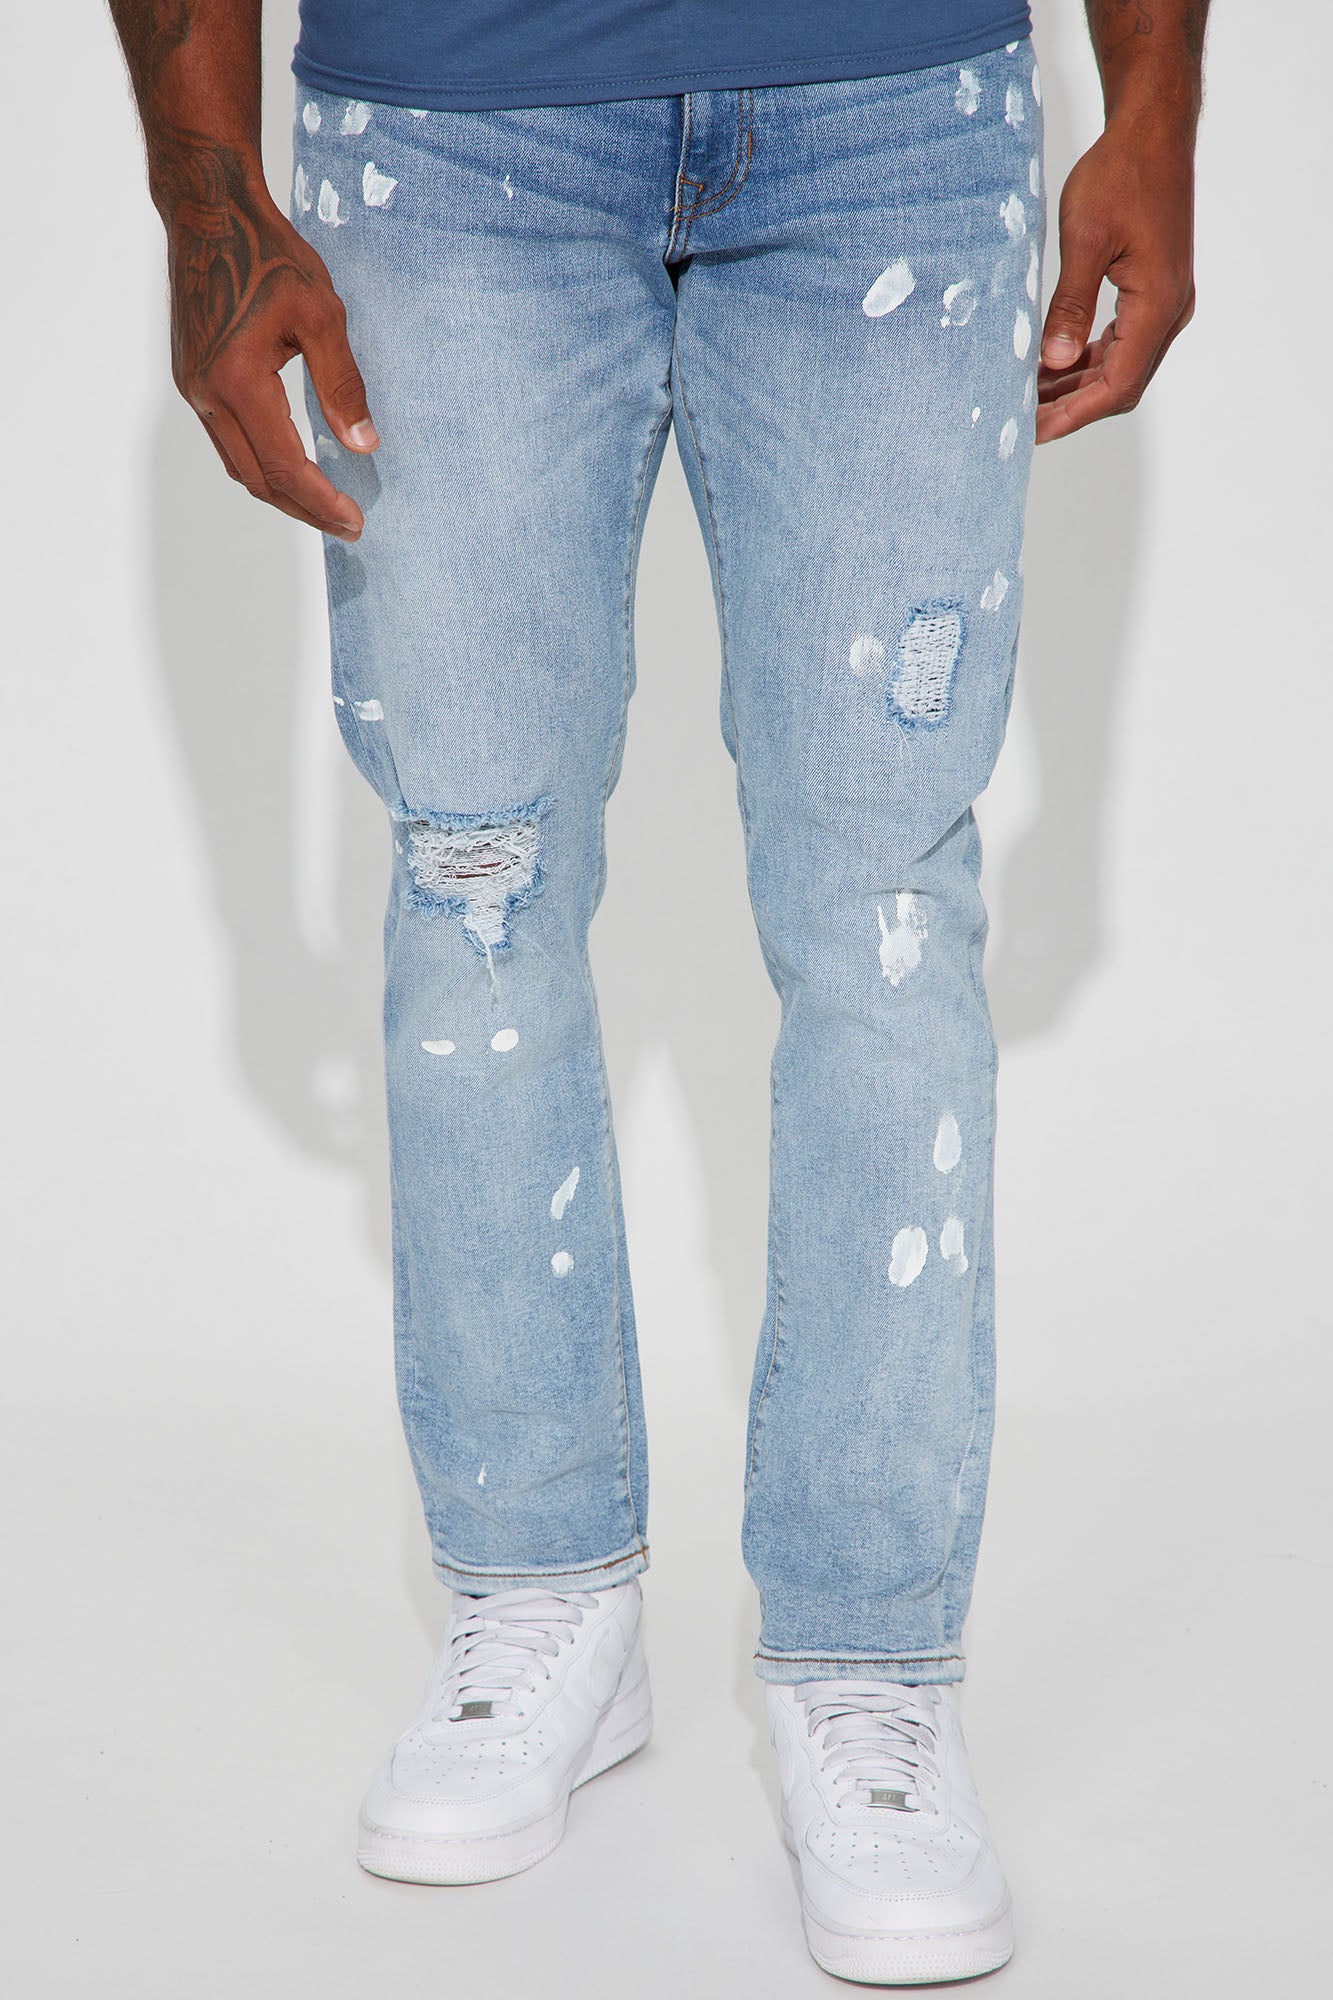 Go Along Paint Splatter Slim Jeans - Light Wash